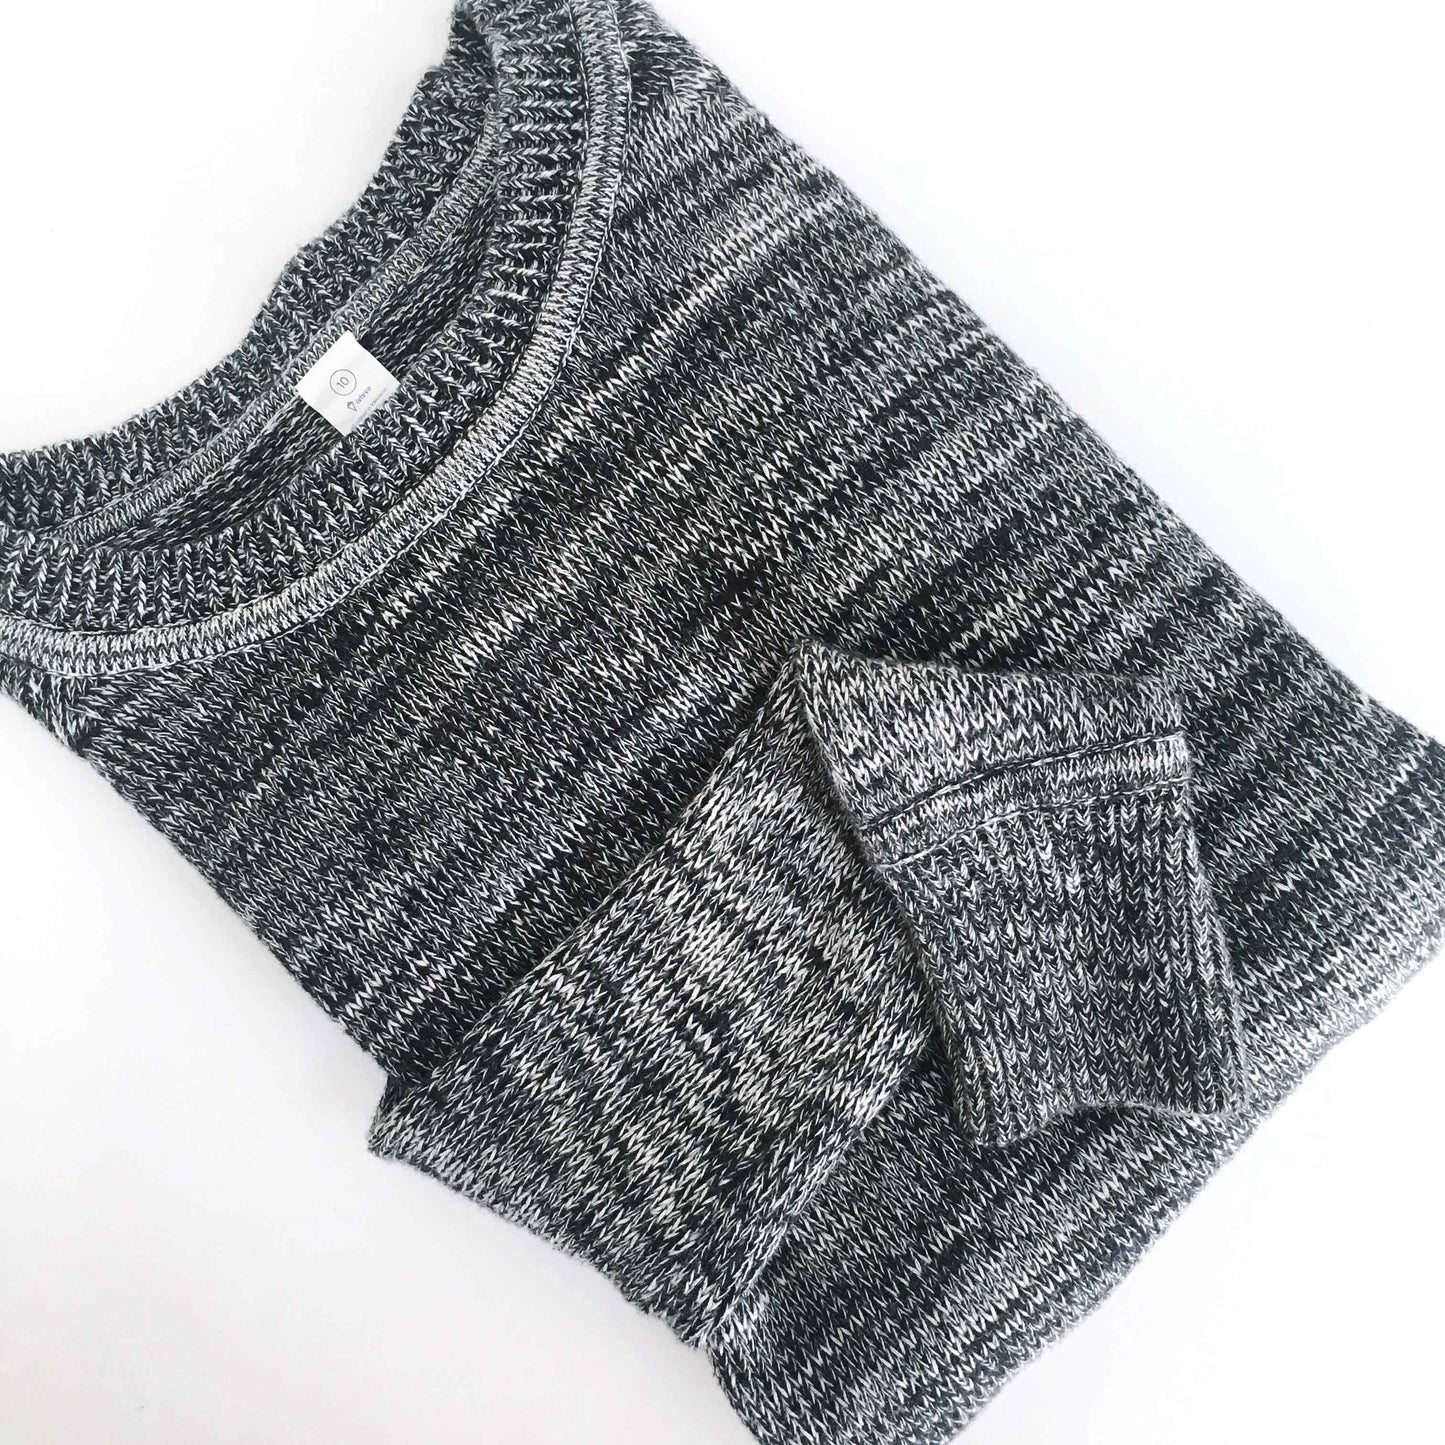 Ivivva Lululemon Savasana Sweater - size 10